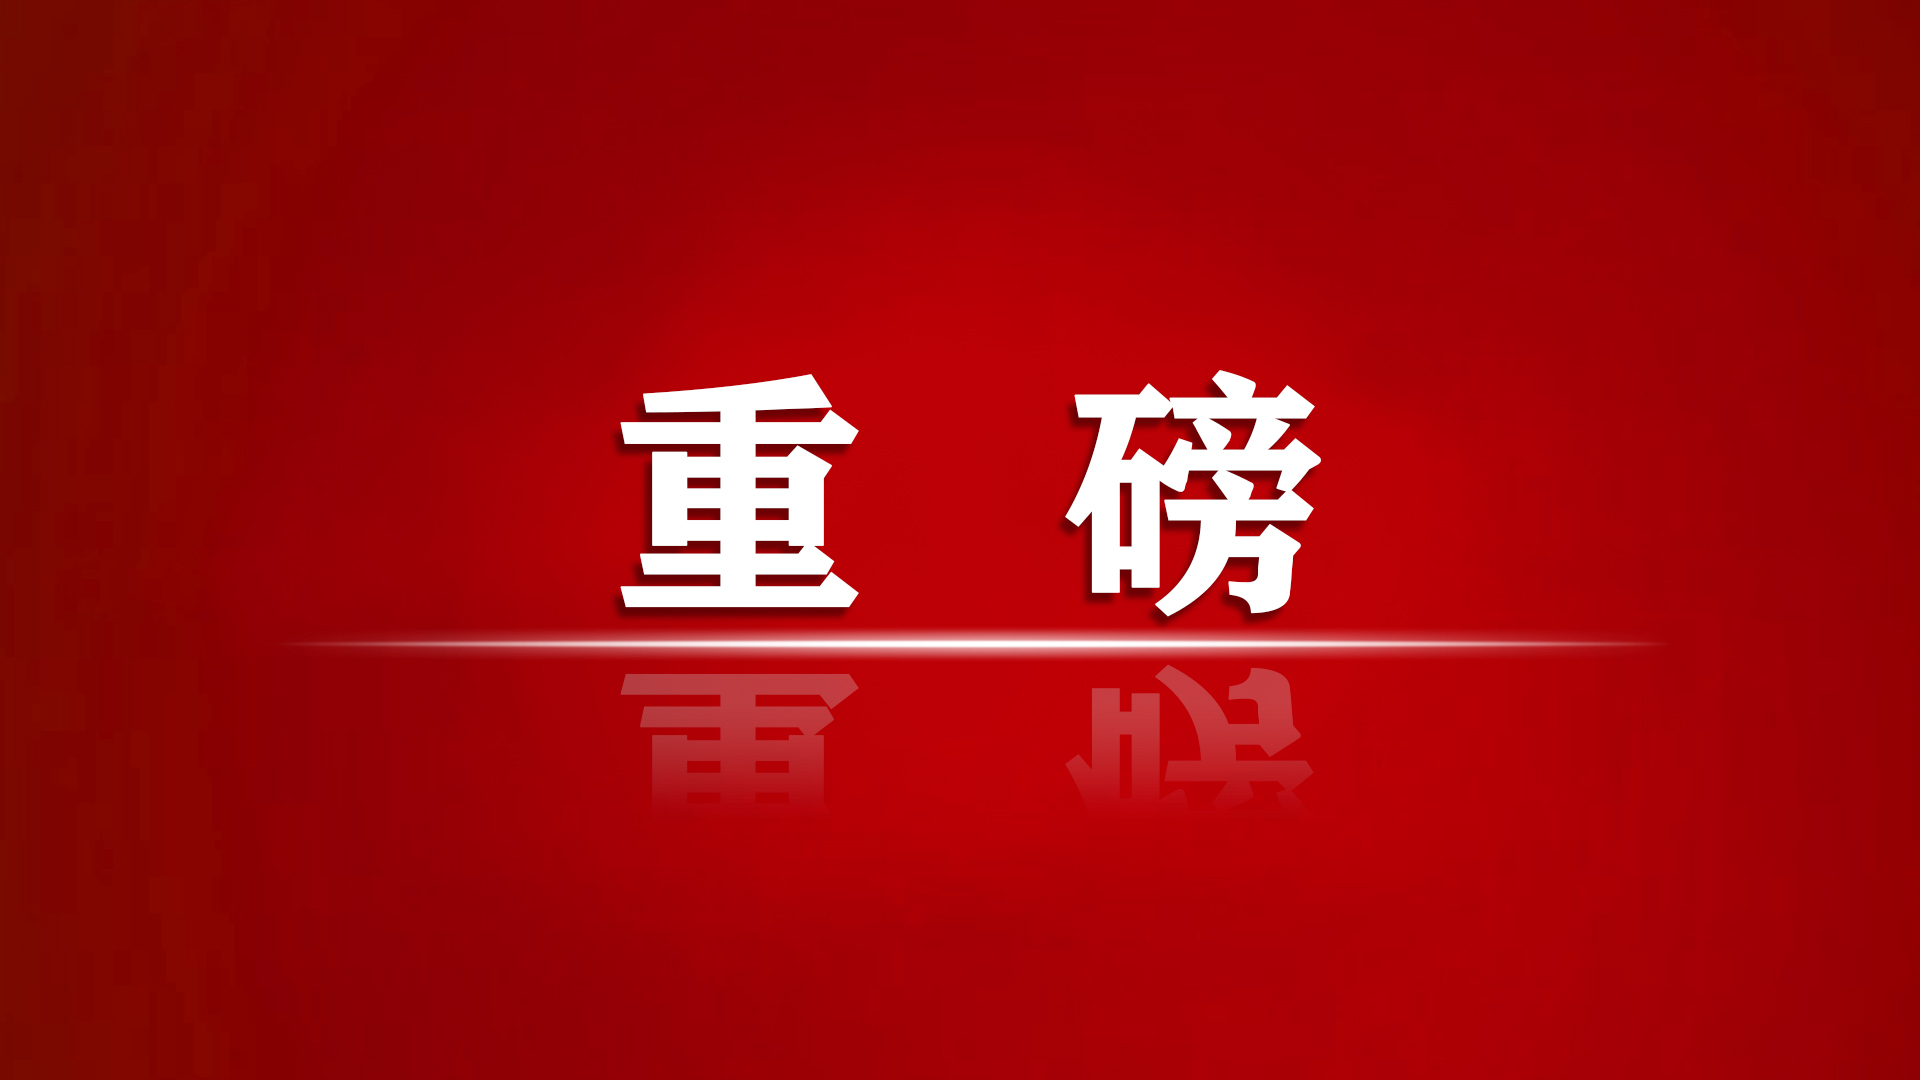 中华人民共和国组织了犯罪法（202年12月24日，第13届国家委员会持续委员会会议）。